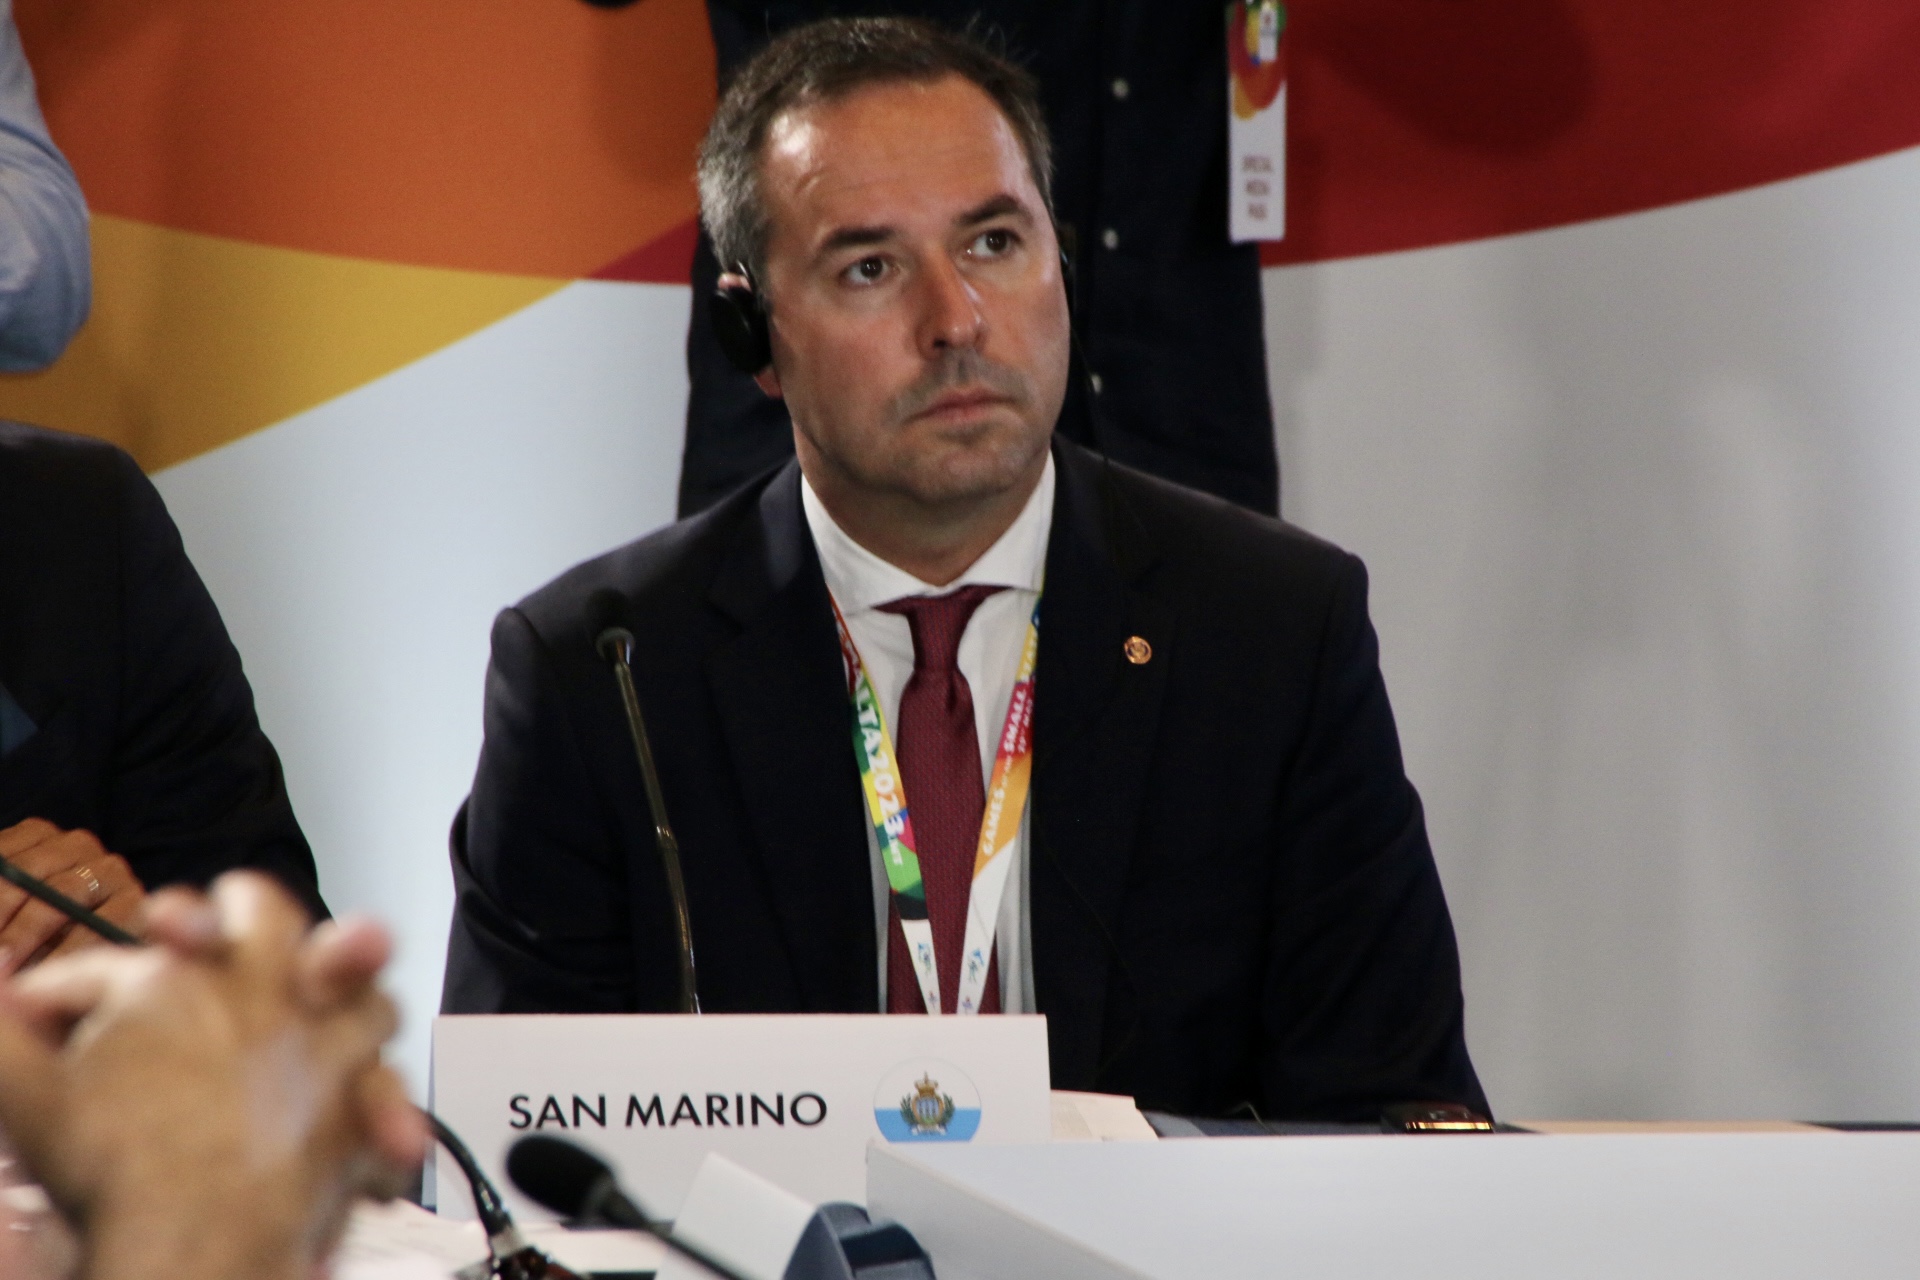 Si apre la 111esima Conferenza ILO, il Segretario di Stato Teodoro Lonfernini seguirà i lavori da San Marino